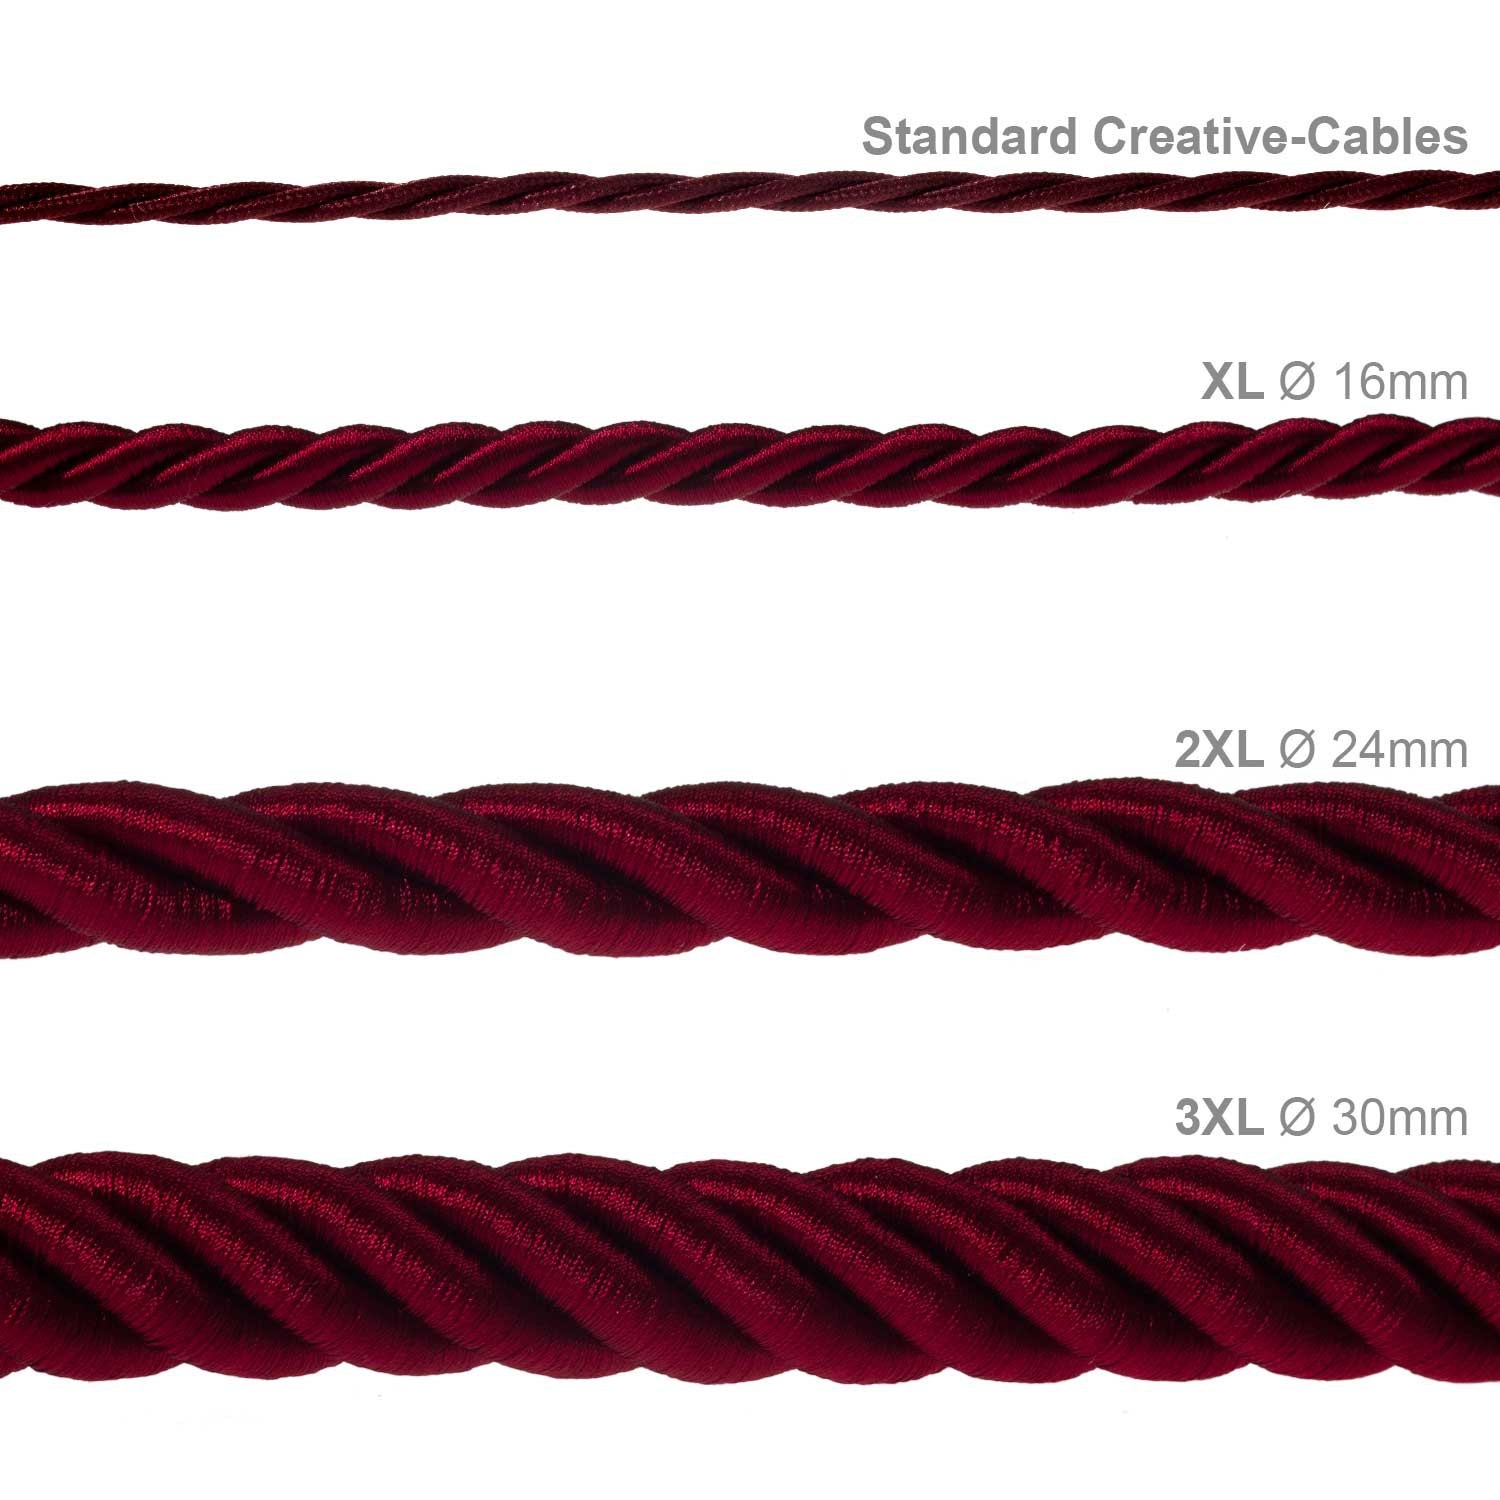 Cordón XL, cable eléctrico 3x0,75, recubierto en tejido burdeos oscuro brillante. Diámetro: 16mm.